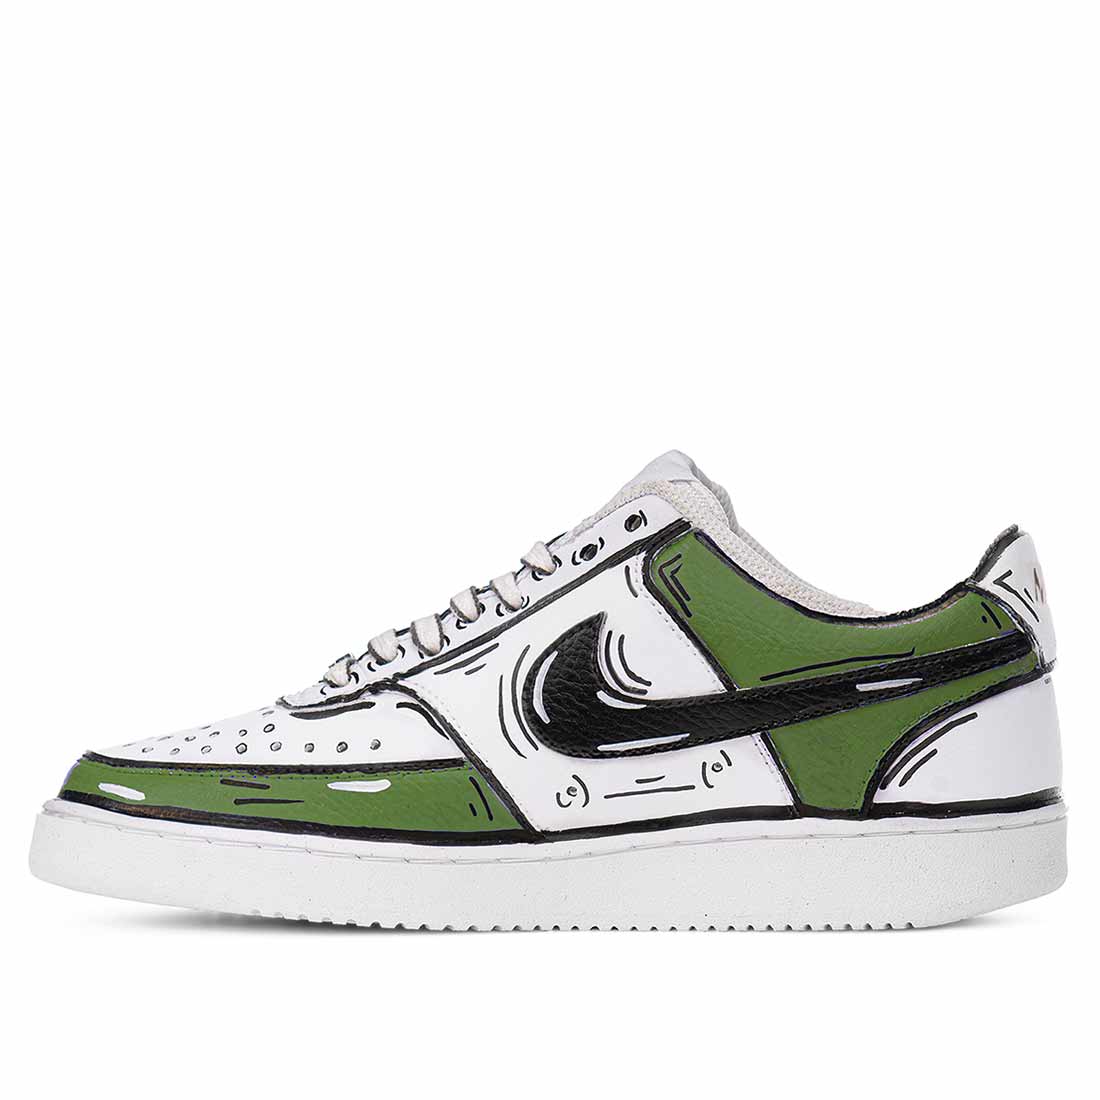 Scarpe Nike court vision verde oliva e bianche disegnate a mano in stile cartone animato